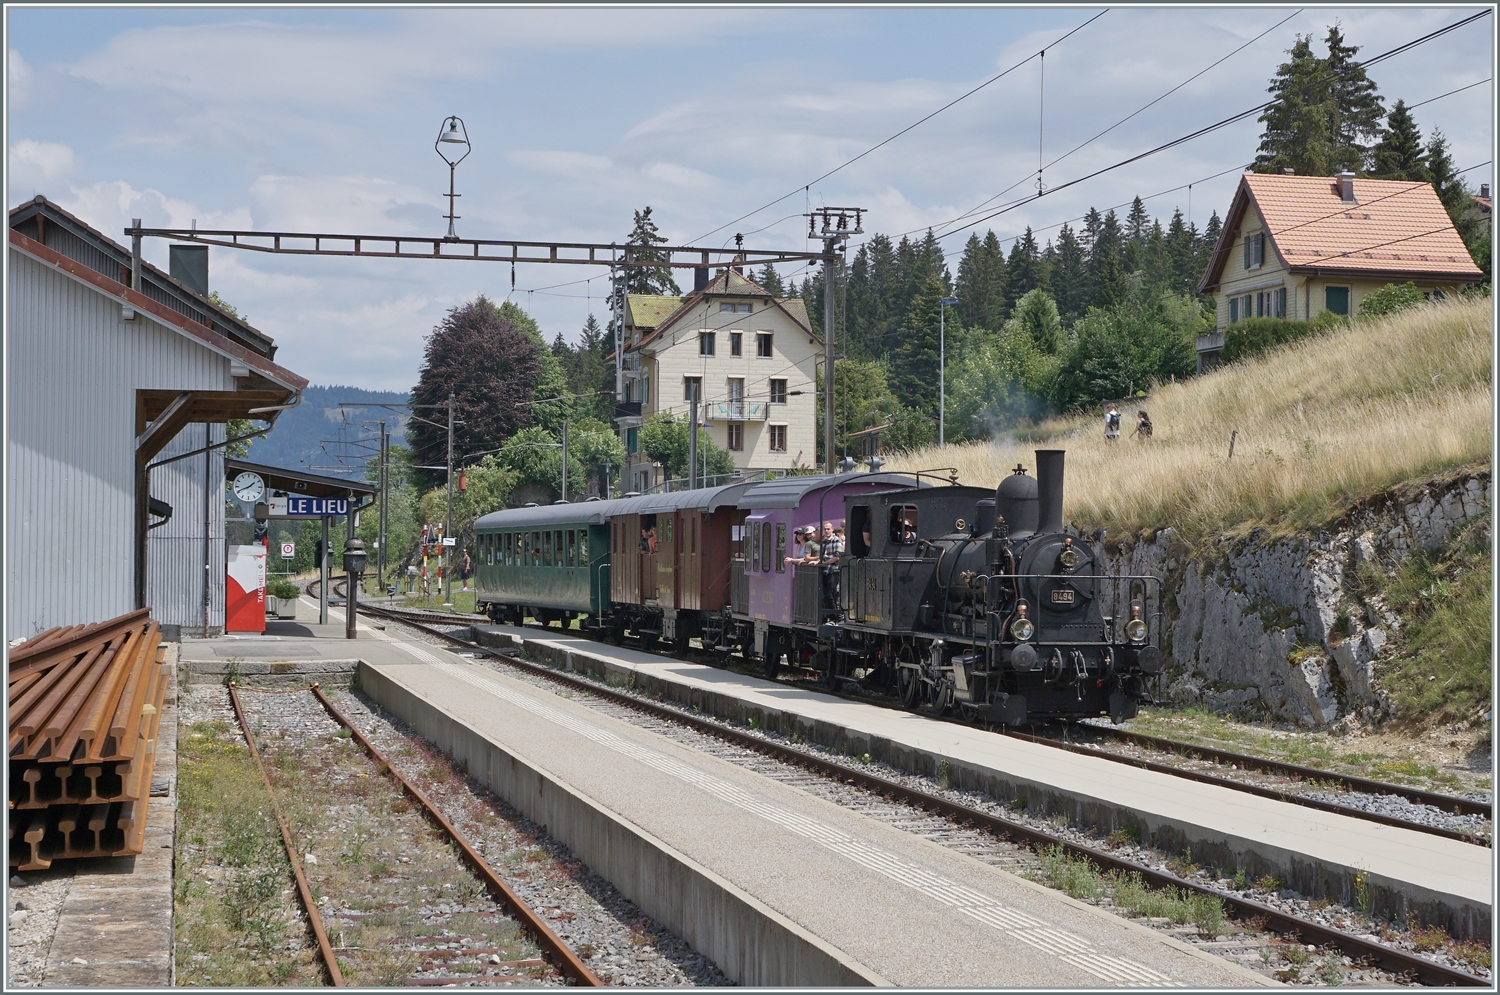 Die E 3/3 8494  Tigerli  (UIC 90 85 0008 494-6) mit ihrem Zug nach Le Brassus erreicht den Bahnhof von Le Lieu, wo es eine Kreuzung mit der S4 (Le Brassus - Aigle) abzuwarten gilt.

23. Juli 2023